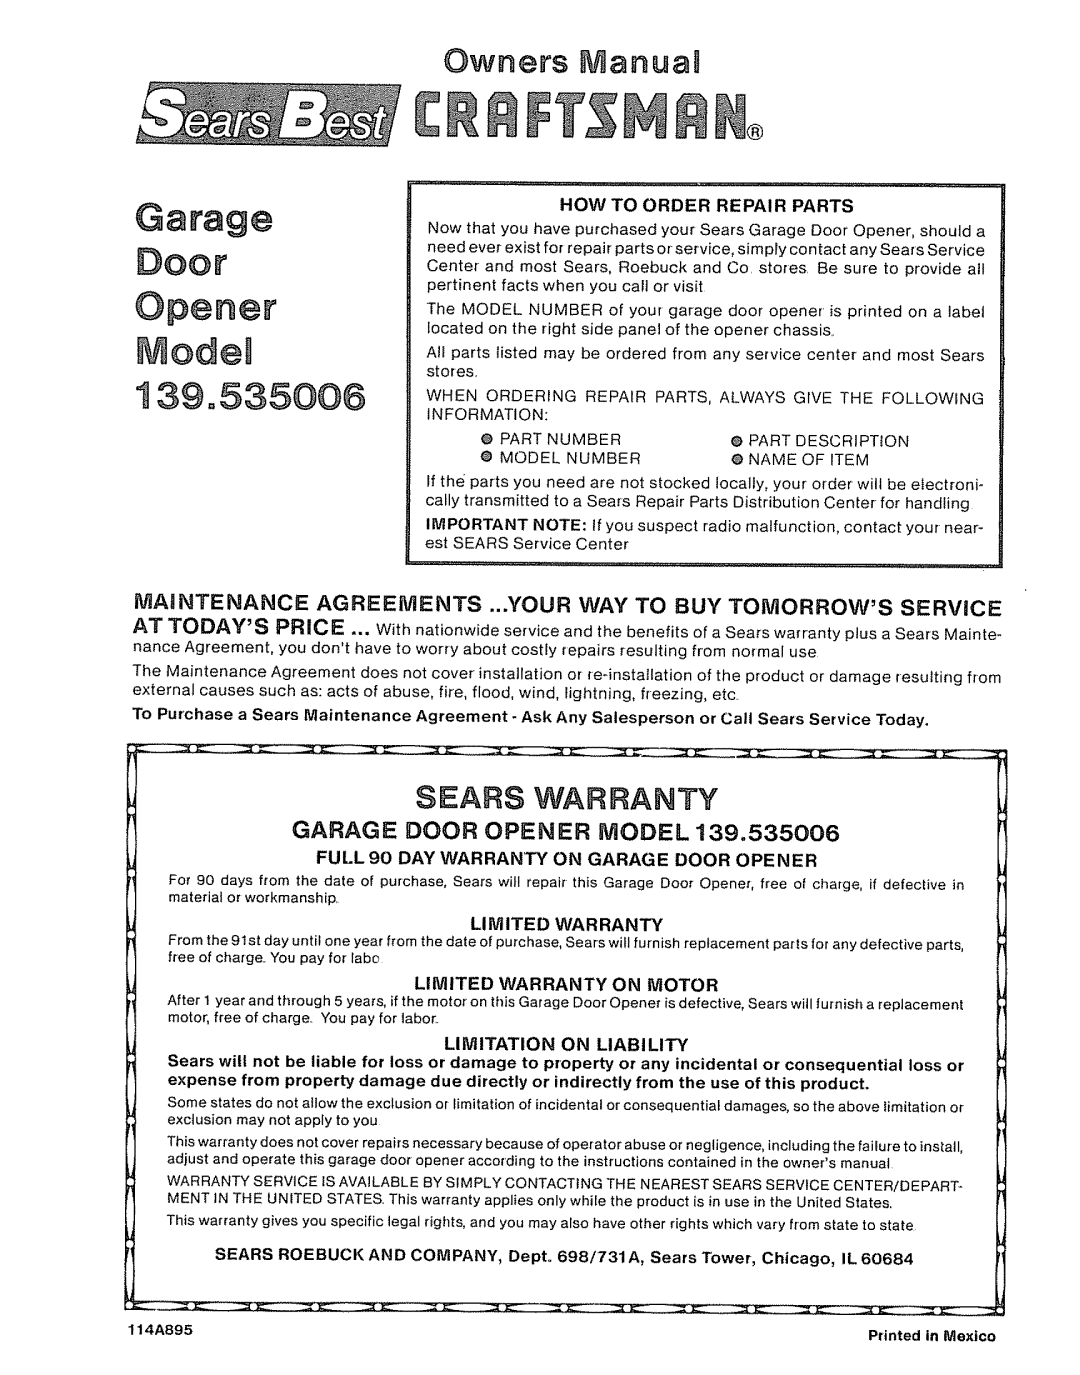 Craftsman 39535006 Garage Door Opener ModeU 139,535006, Sears Warranty, Owners tiVtlanua8, Garage Door Opener Model 